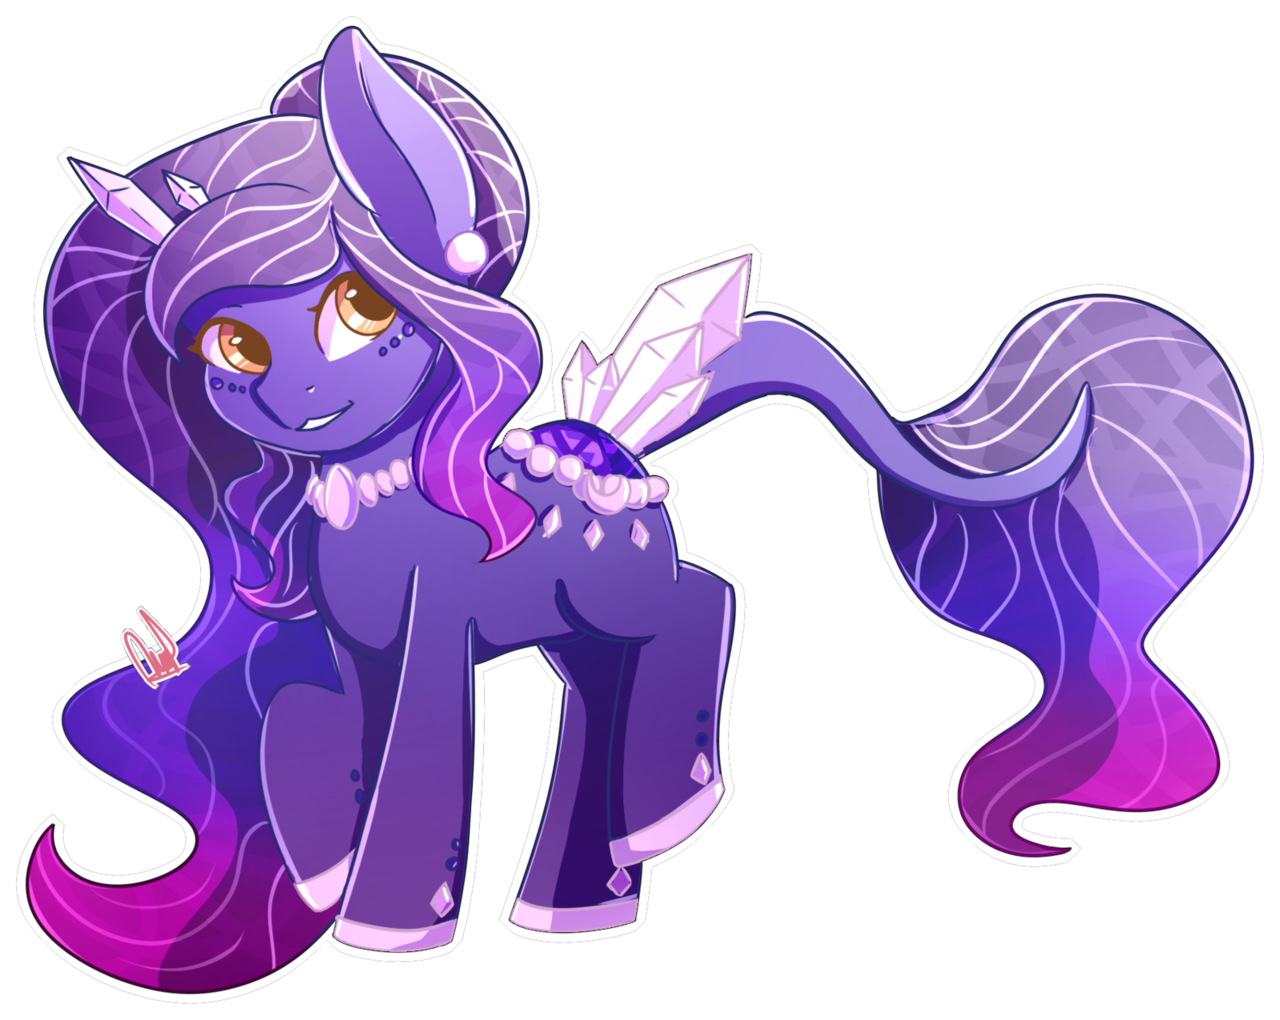 Nicole pony. Кристальные пони ОС. Фиолетовая пони. Фиолетовая поняшка. Фиолетовая пони с рогом.